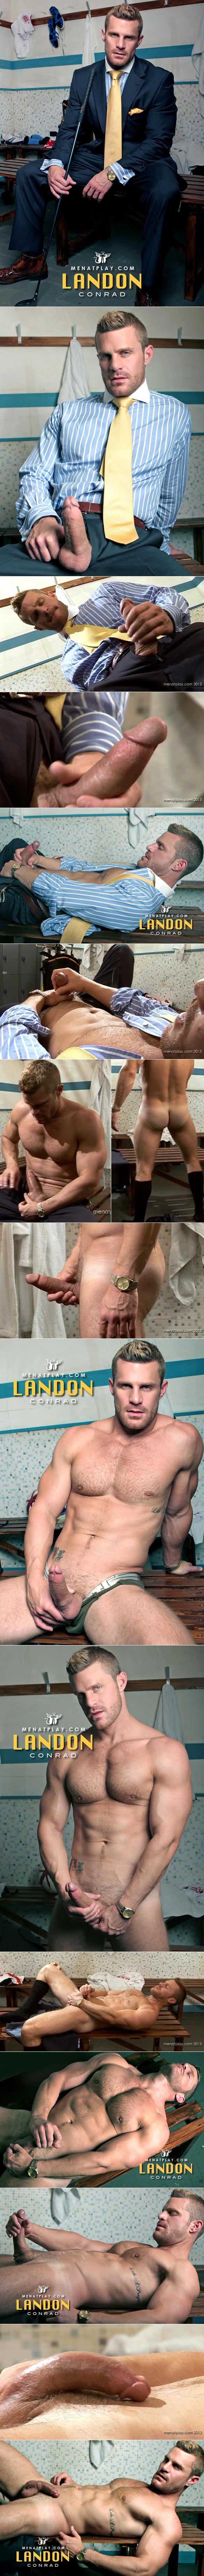 585px x 7377px - MenAtPlay: Landon Conrad's hot locker room jerk off | Fagalicious - Gay Porn  Blog